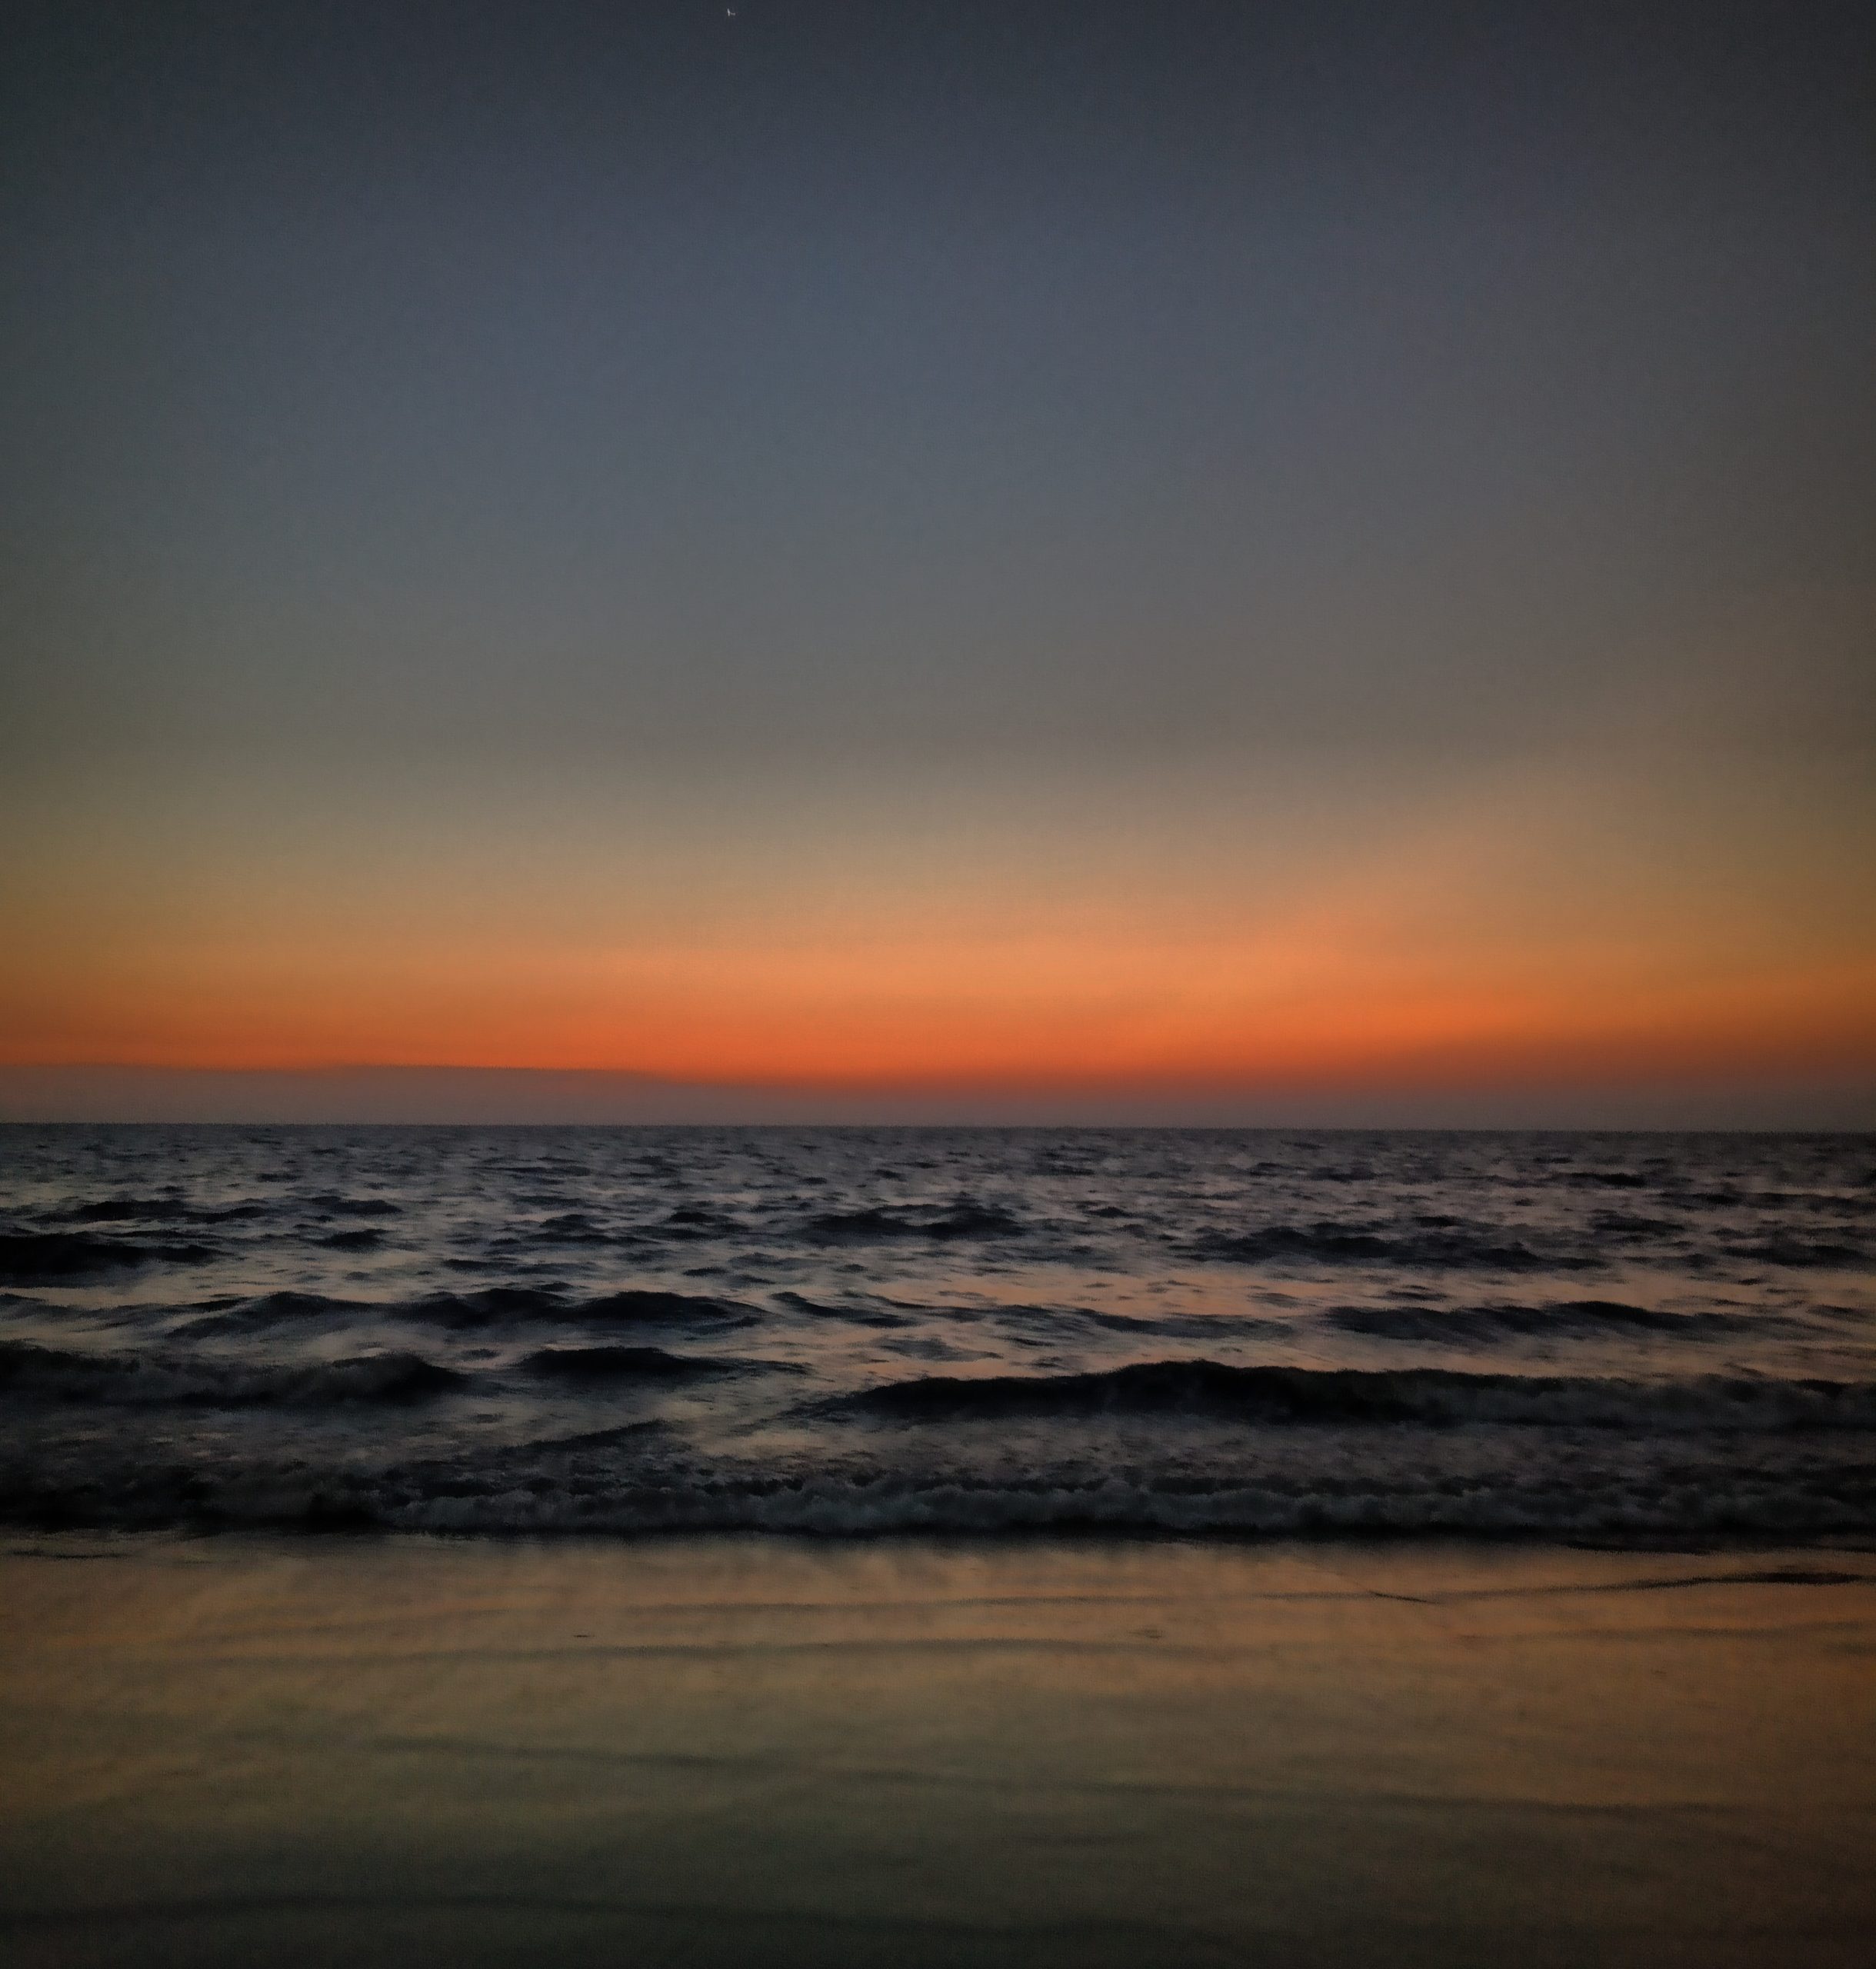 Sunset on the Sea